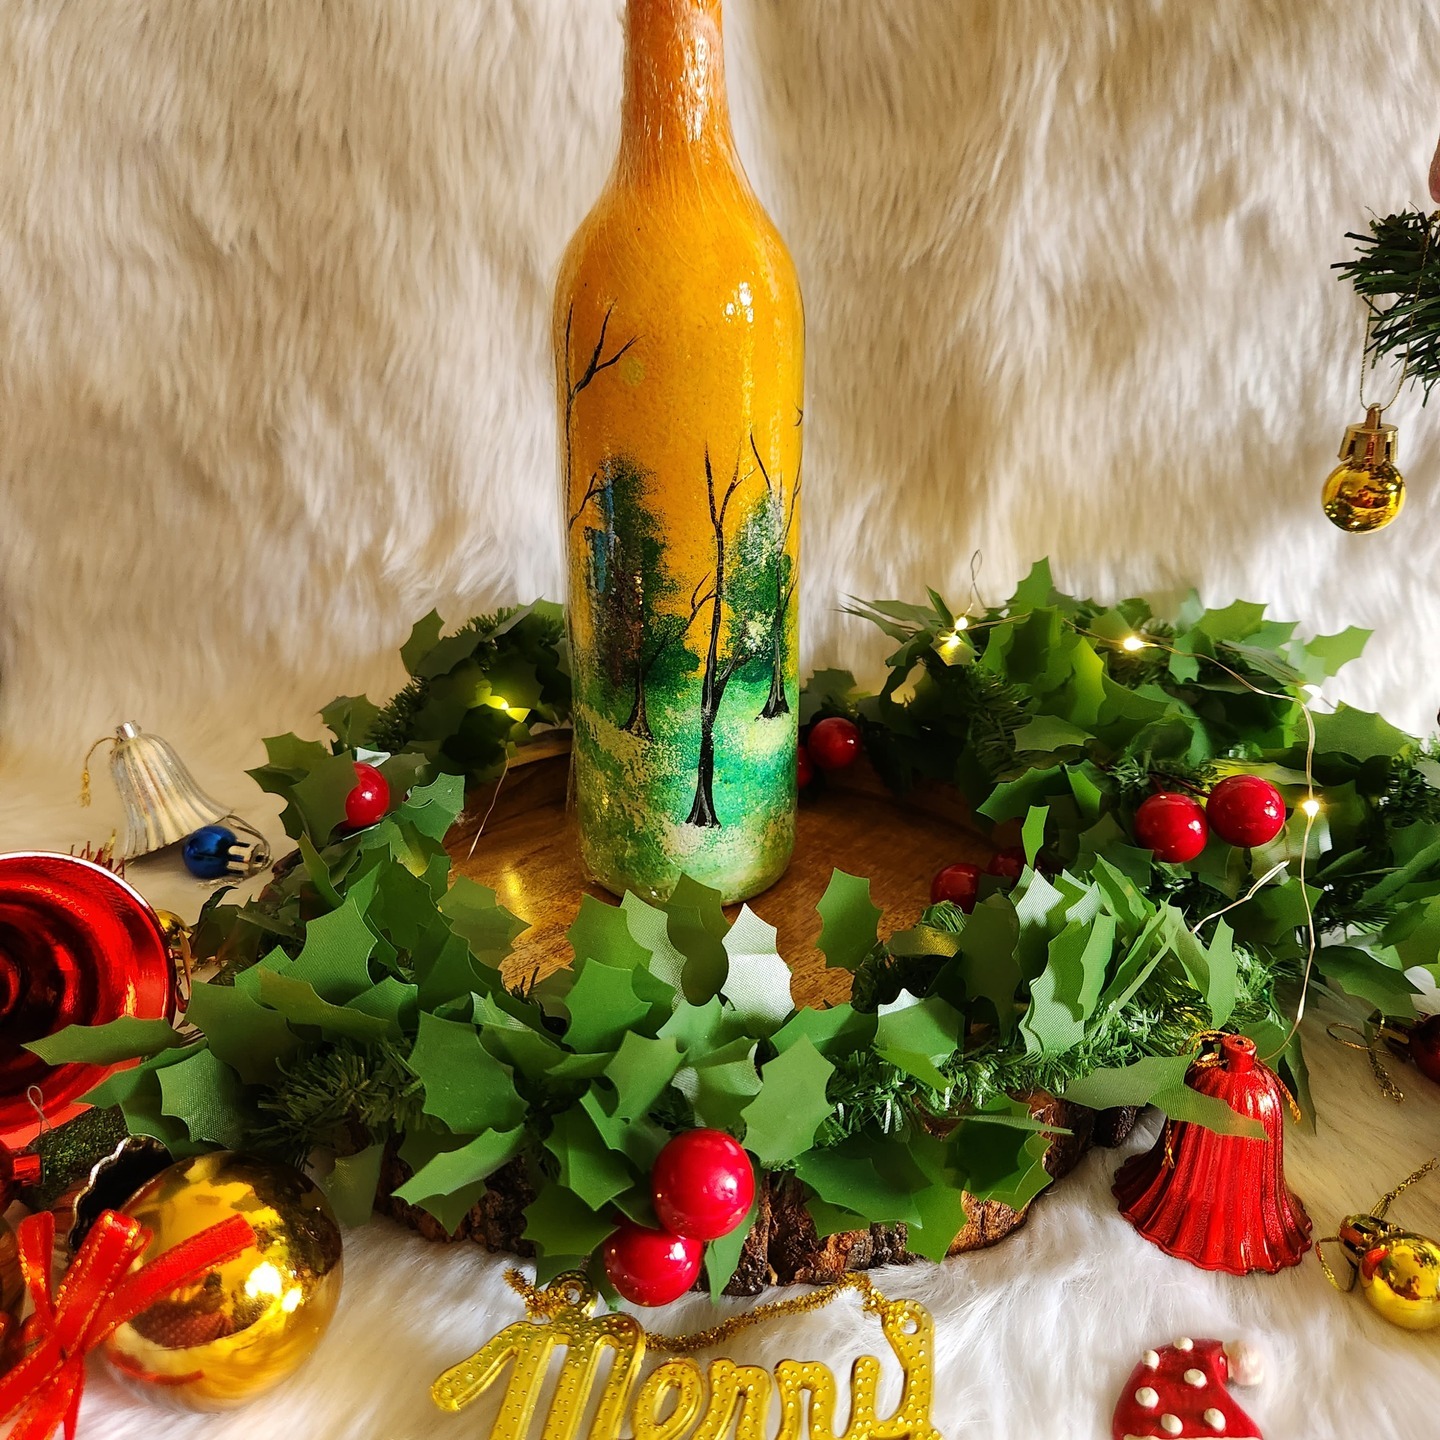 Christmas themed handpainted bottle art